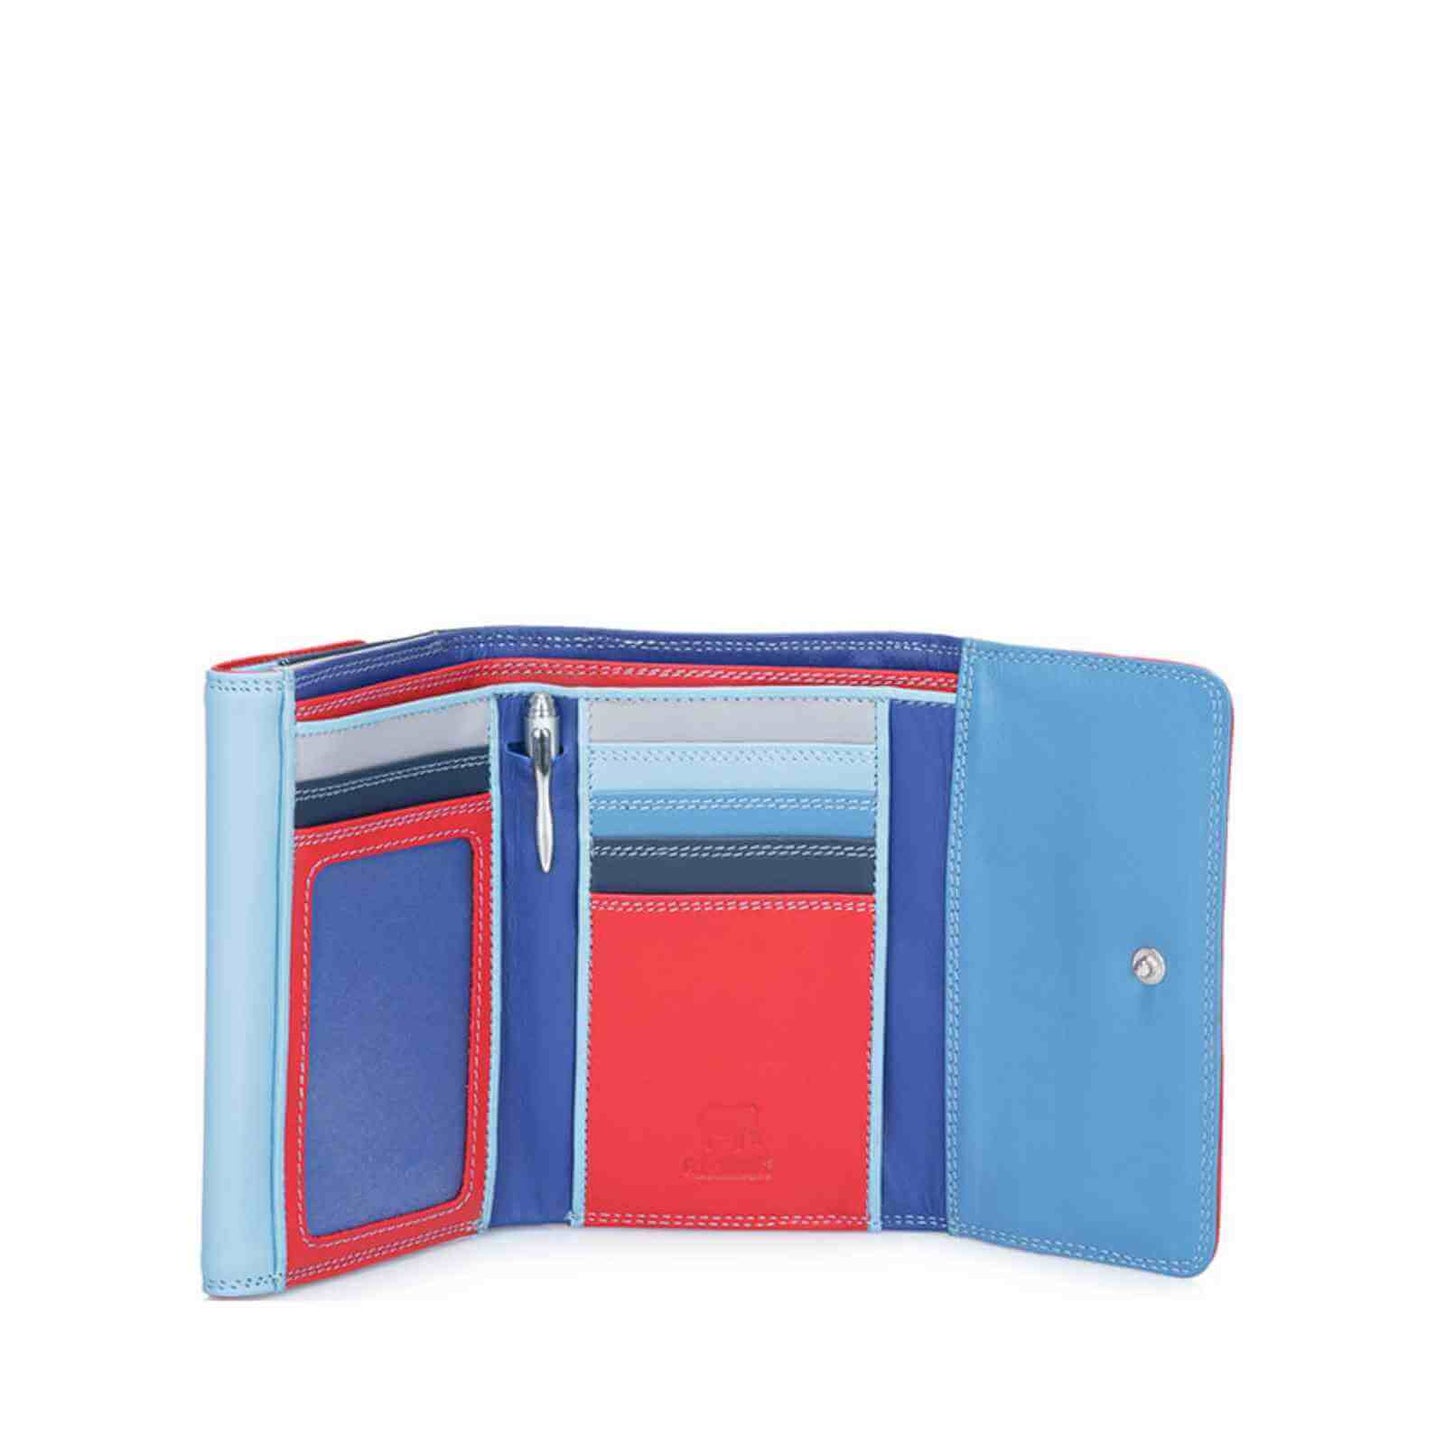 Indvendig Mywalit pung med double flap i rød og blå